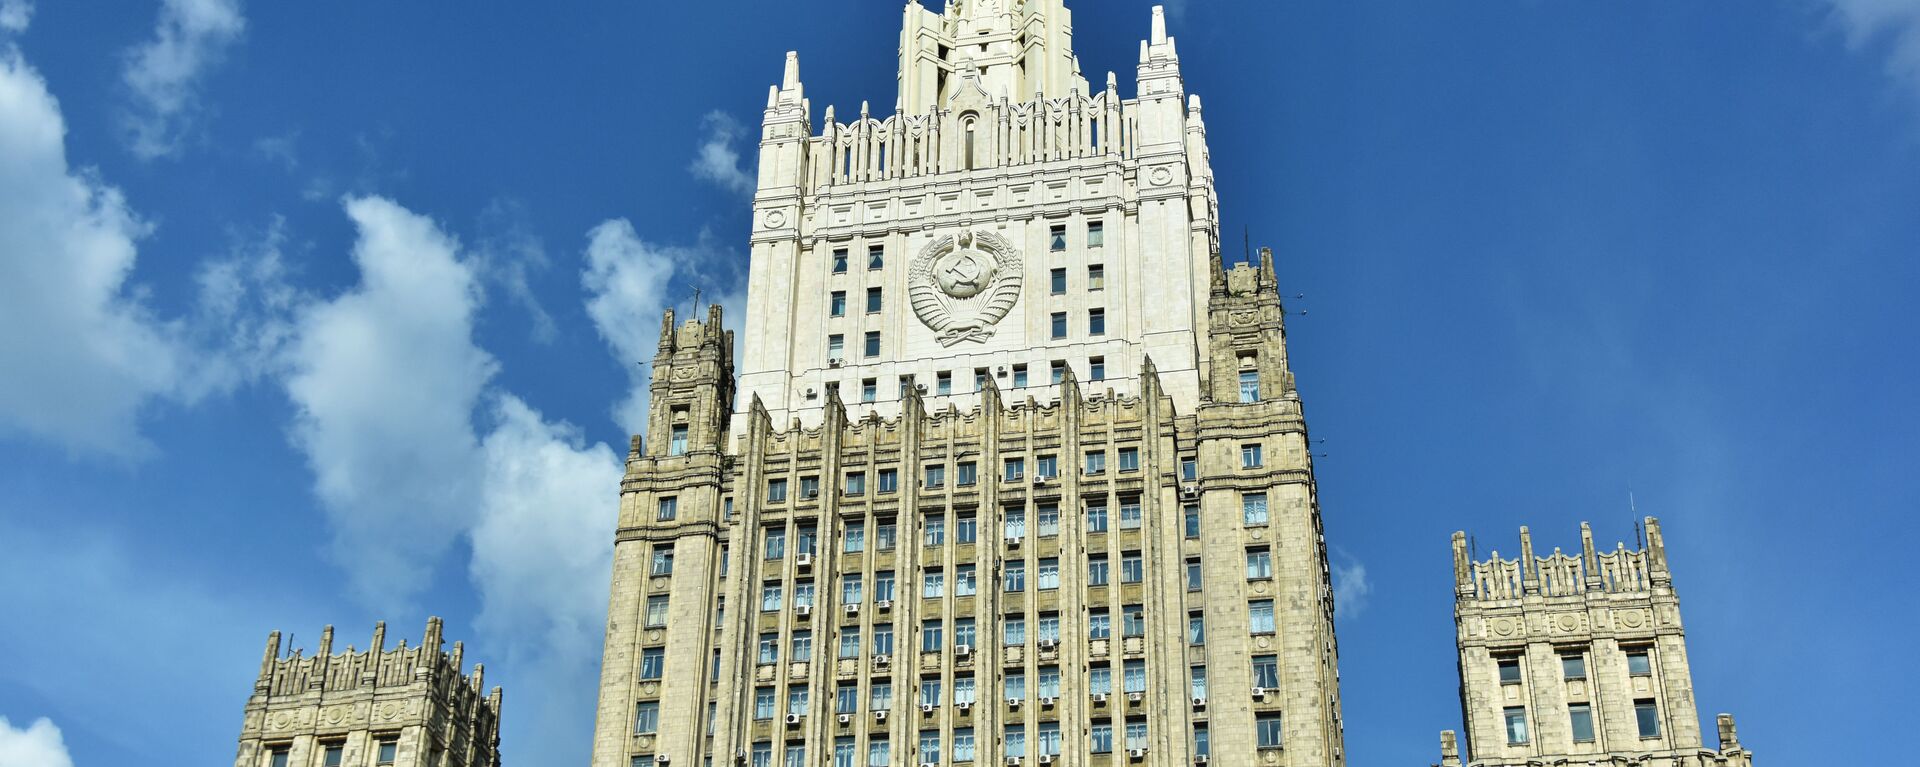 Zgrada Ministarstva spoljnih poslova Rusije u Moskvi - Sputnik Srbija, 1920, 19.04.2021